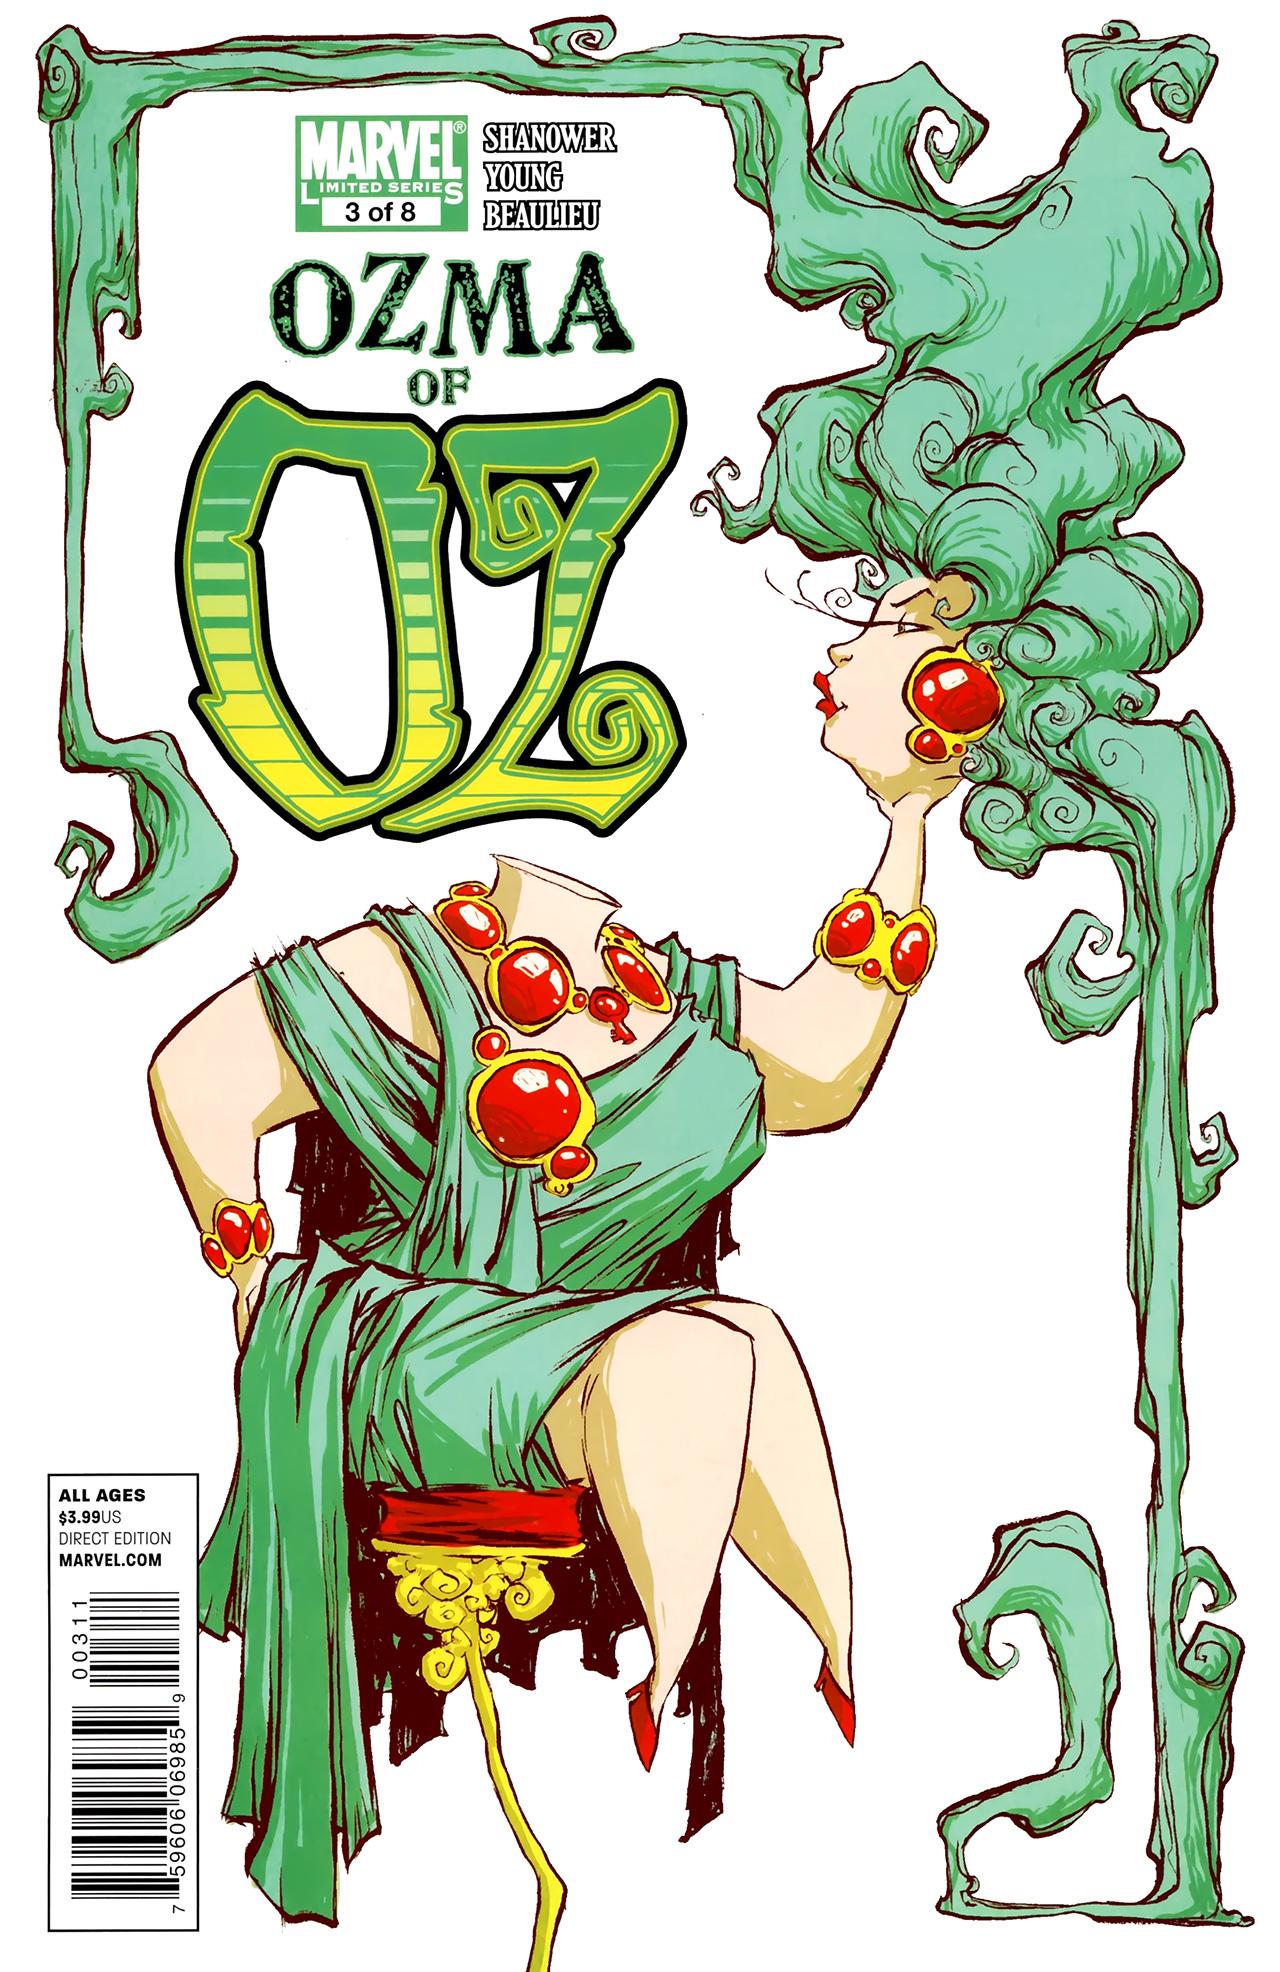 Ozma of Oz Vol. 1 #3